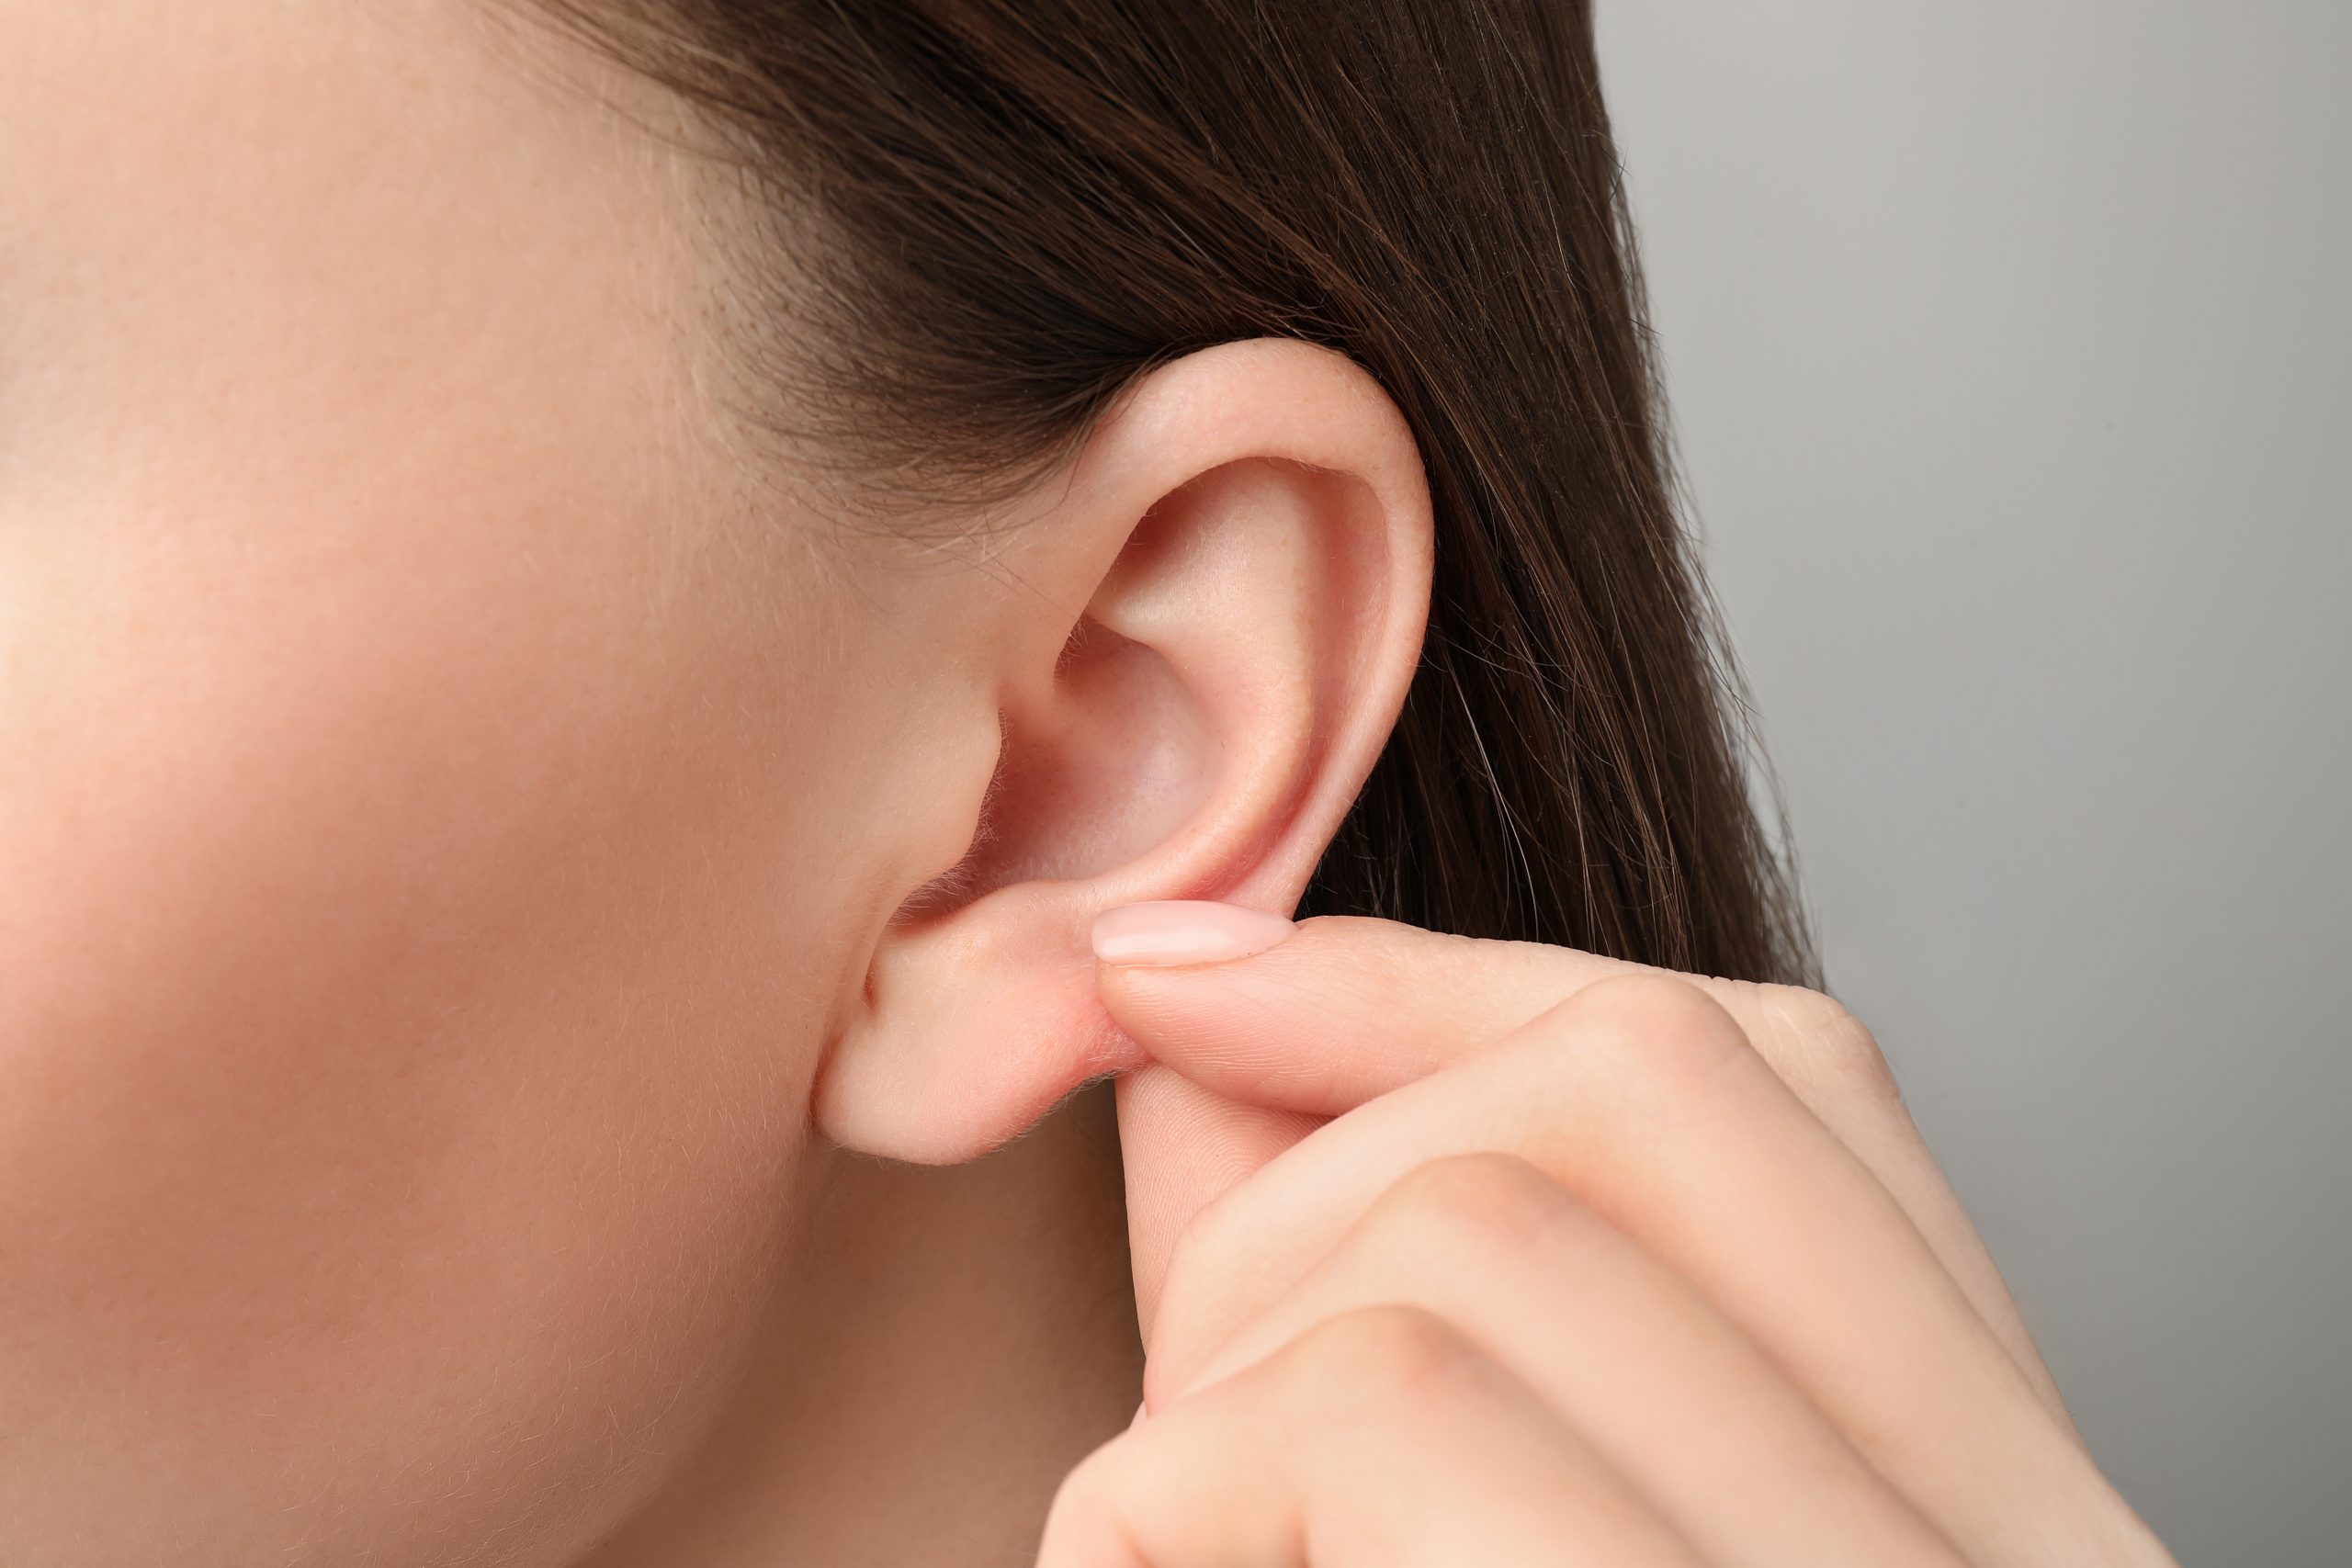 Can sensorineural hearing loss be fixed?